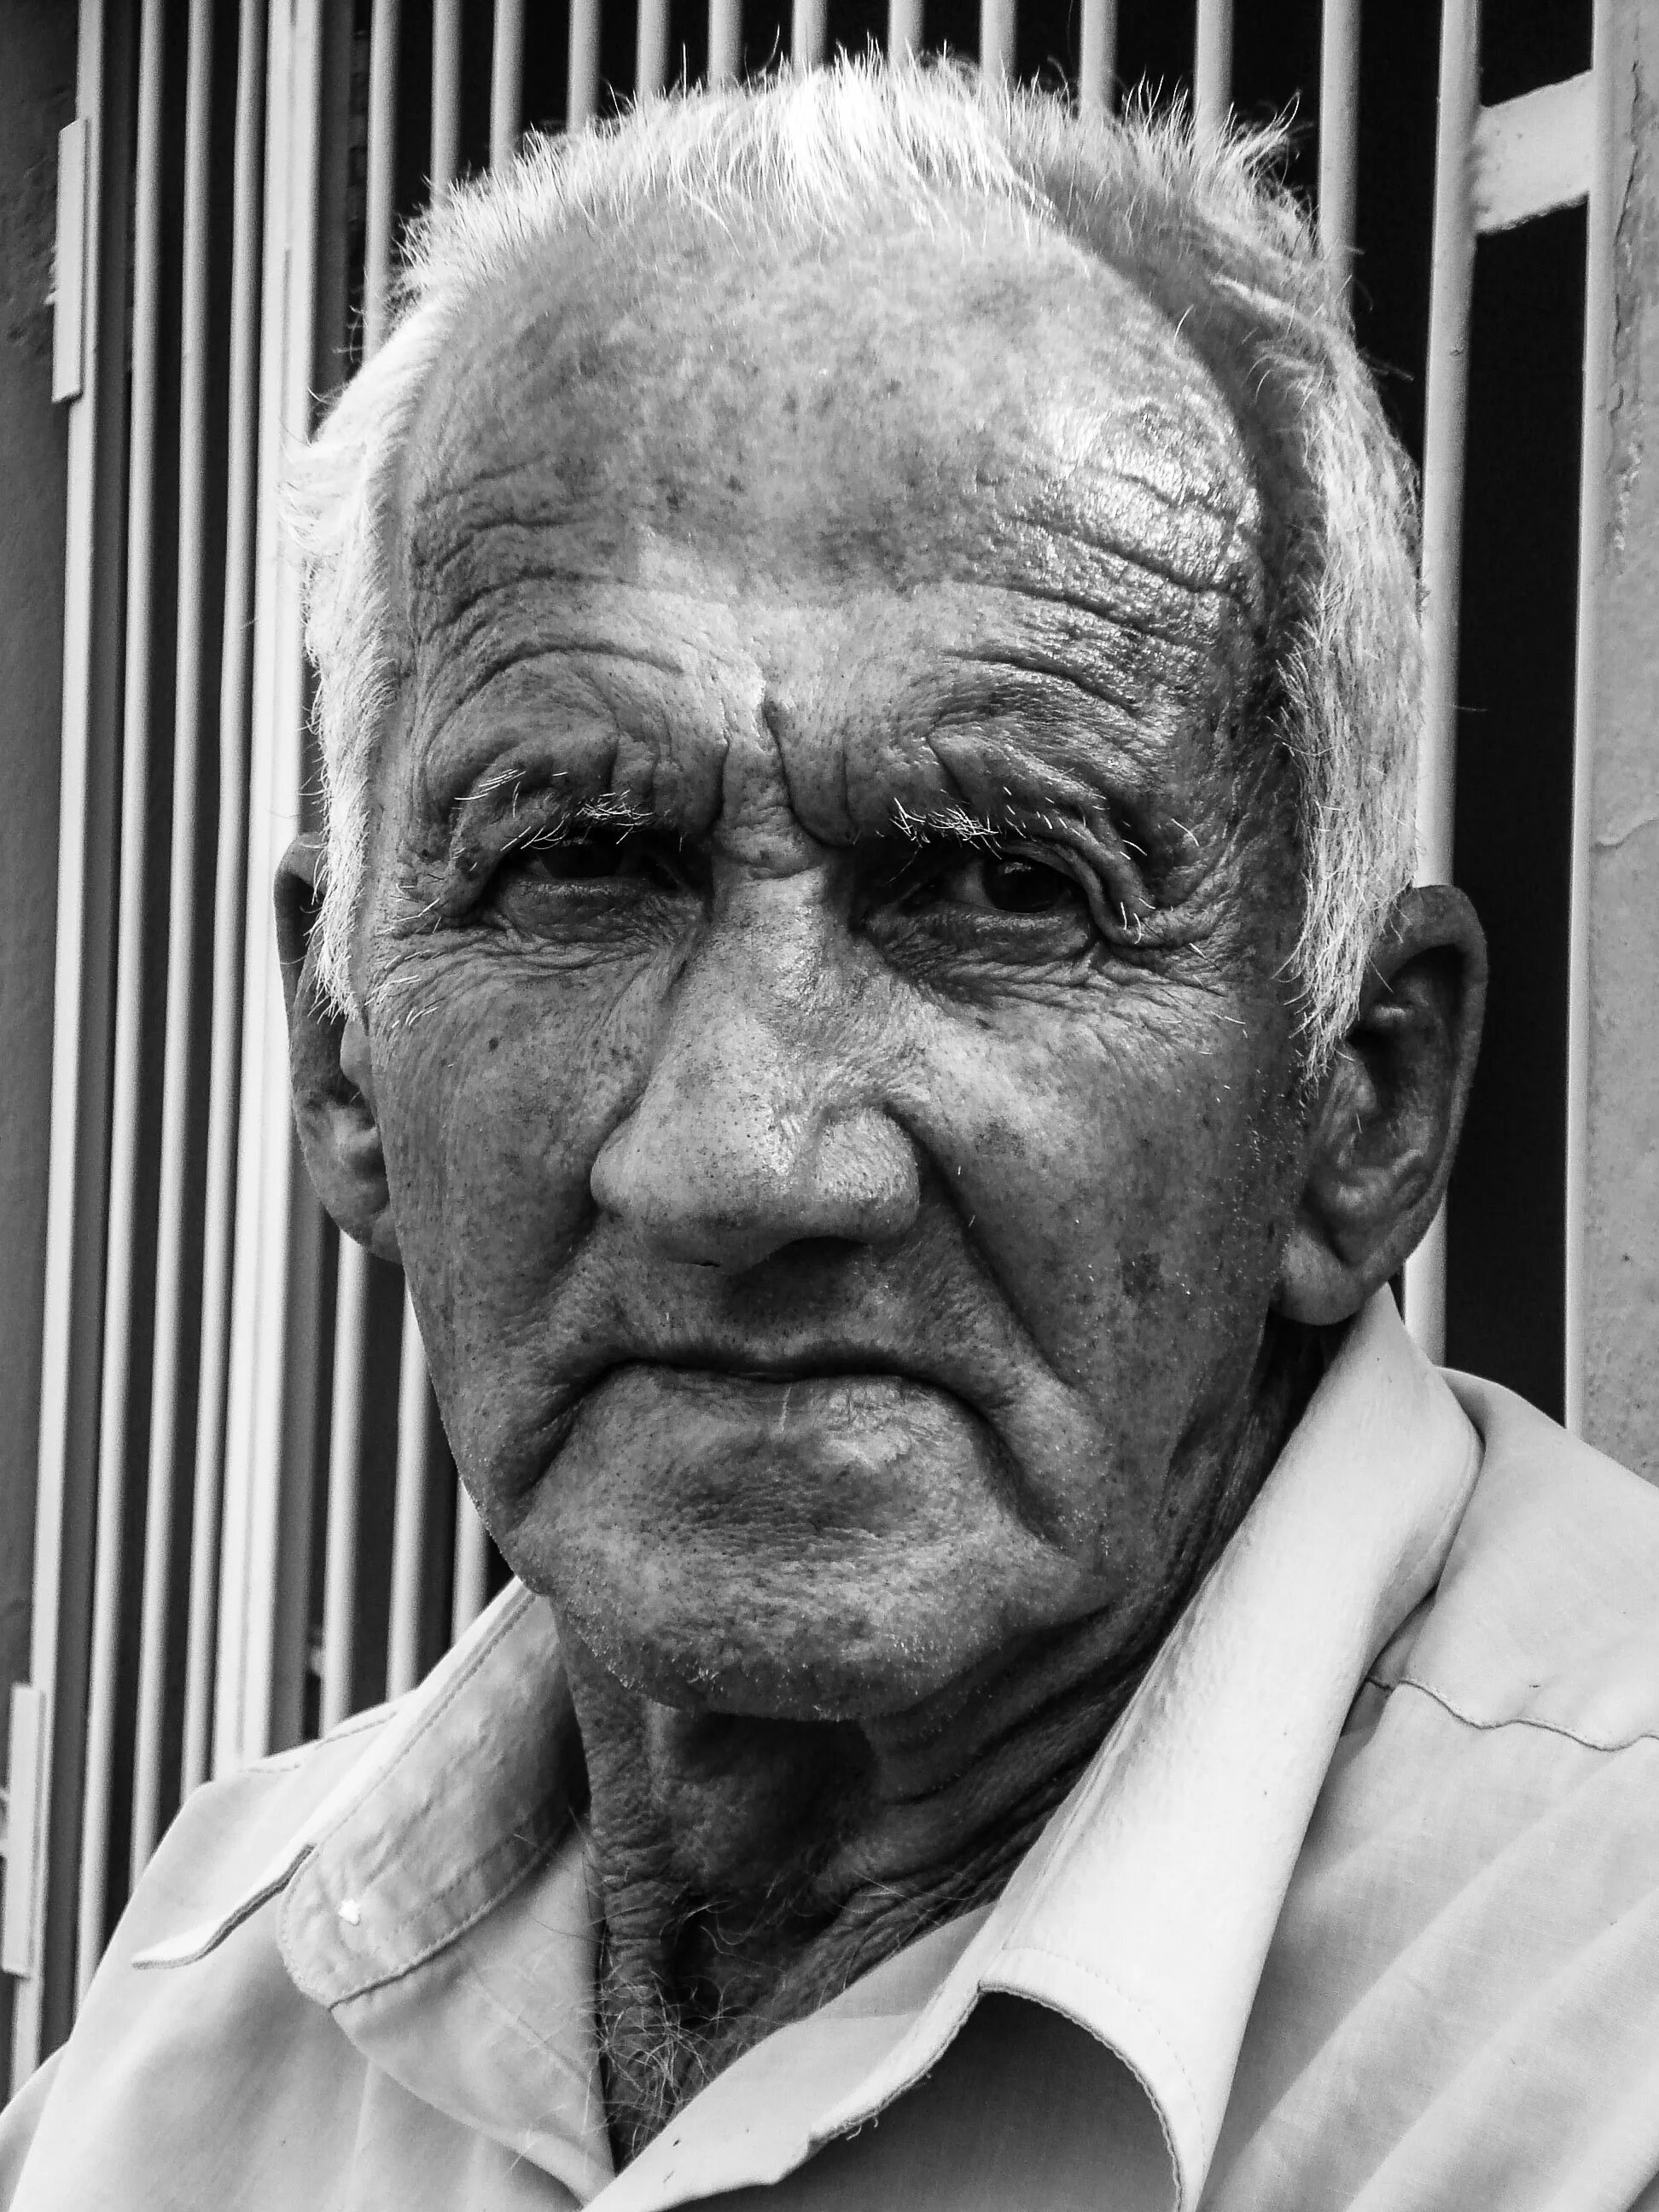 Форум старый мужчина. Старый человек. Лицо старого человека. Фотопортрет пожилого человека. Портреты пожилых людей.